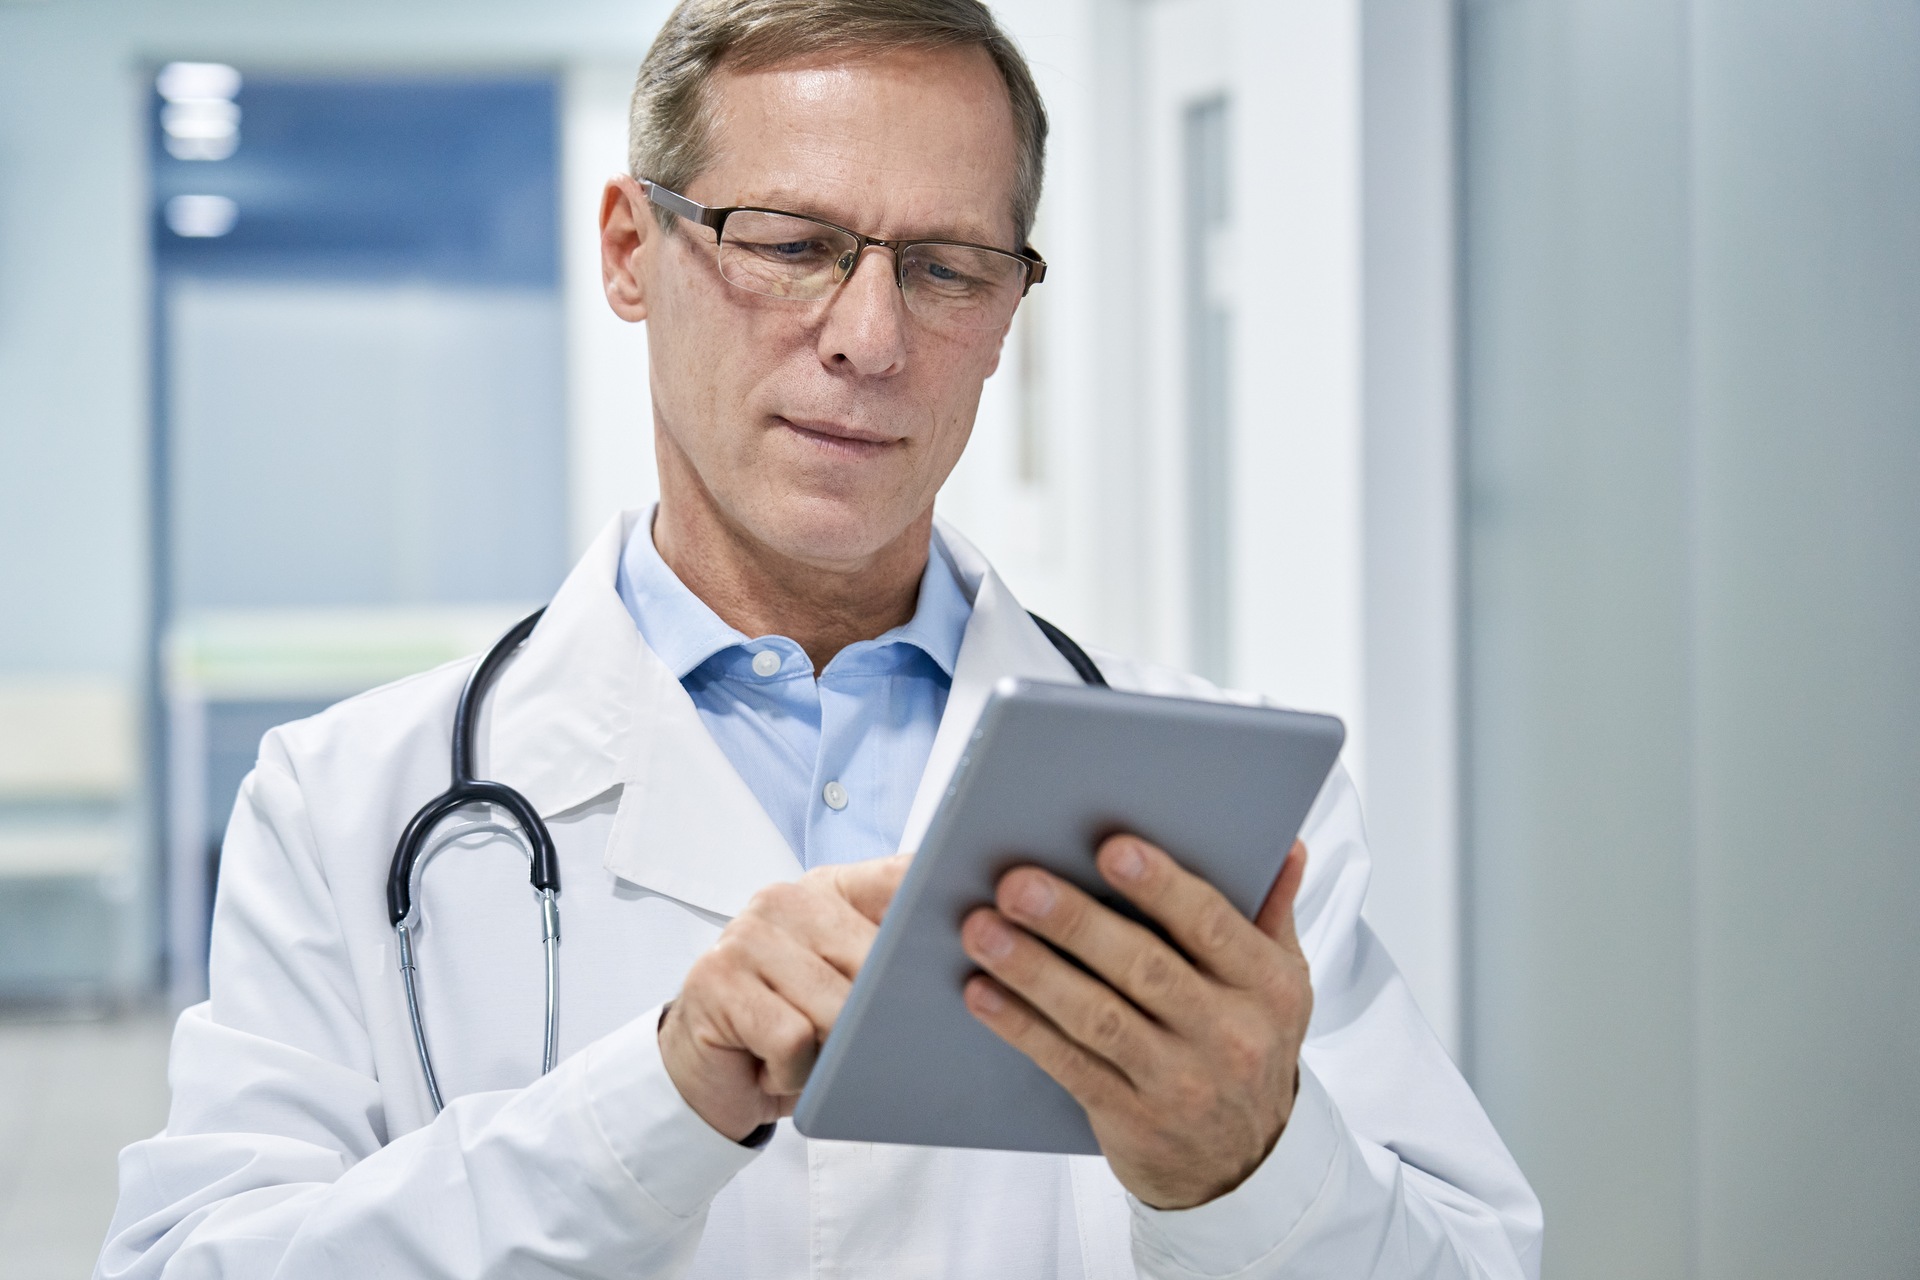 Terveydenhuollon digitalisaatio: Sveitsin väestö haluaa hyvää lisäarvoa terveydenhuollon digitaalisesta muutoksesta, lisää käyttäjäystävällisyyttä, parempaa diagnoosia ja hoitoa sekä alentaa terveydenhuoltokustannuksia